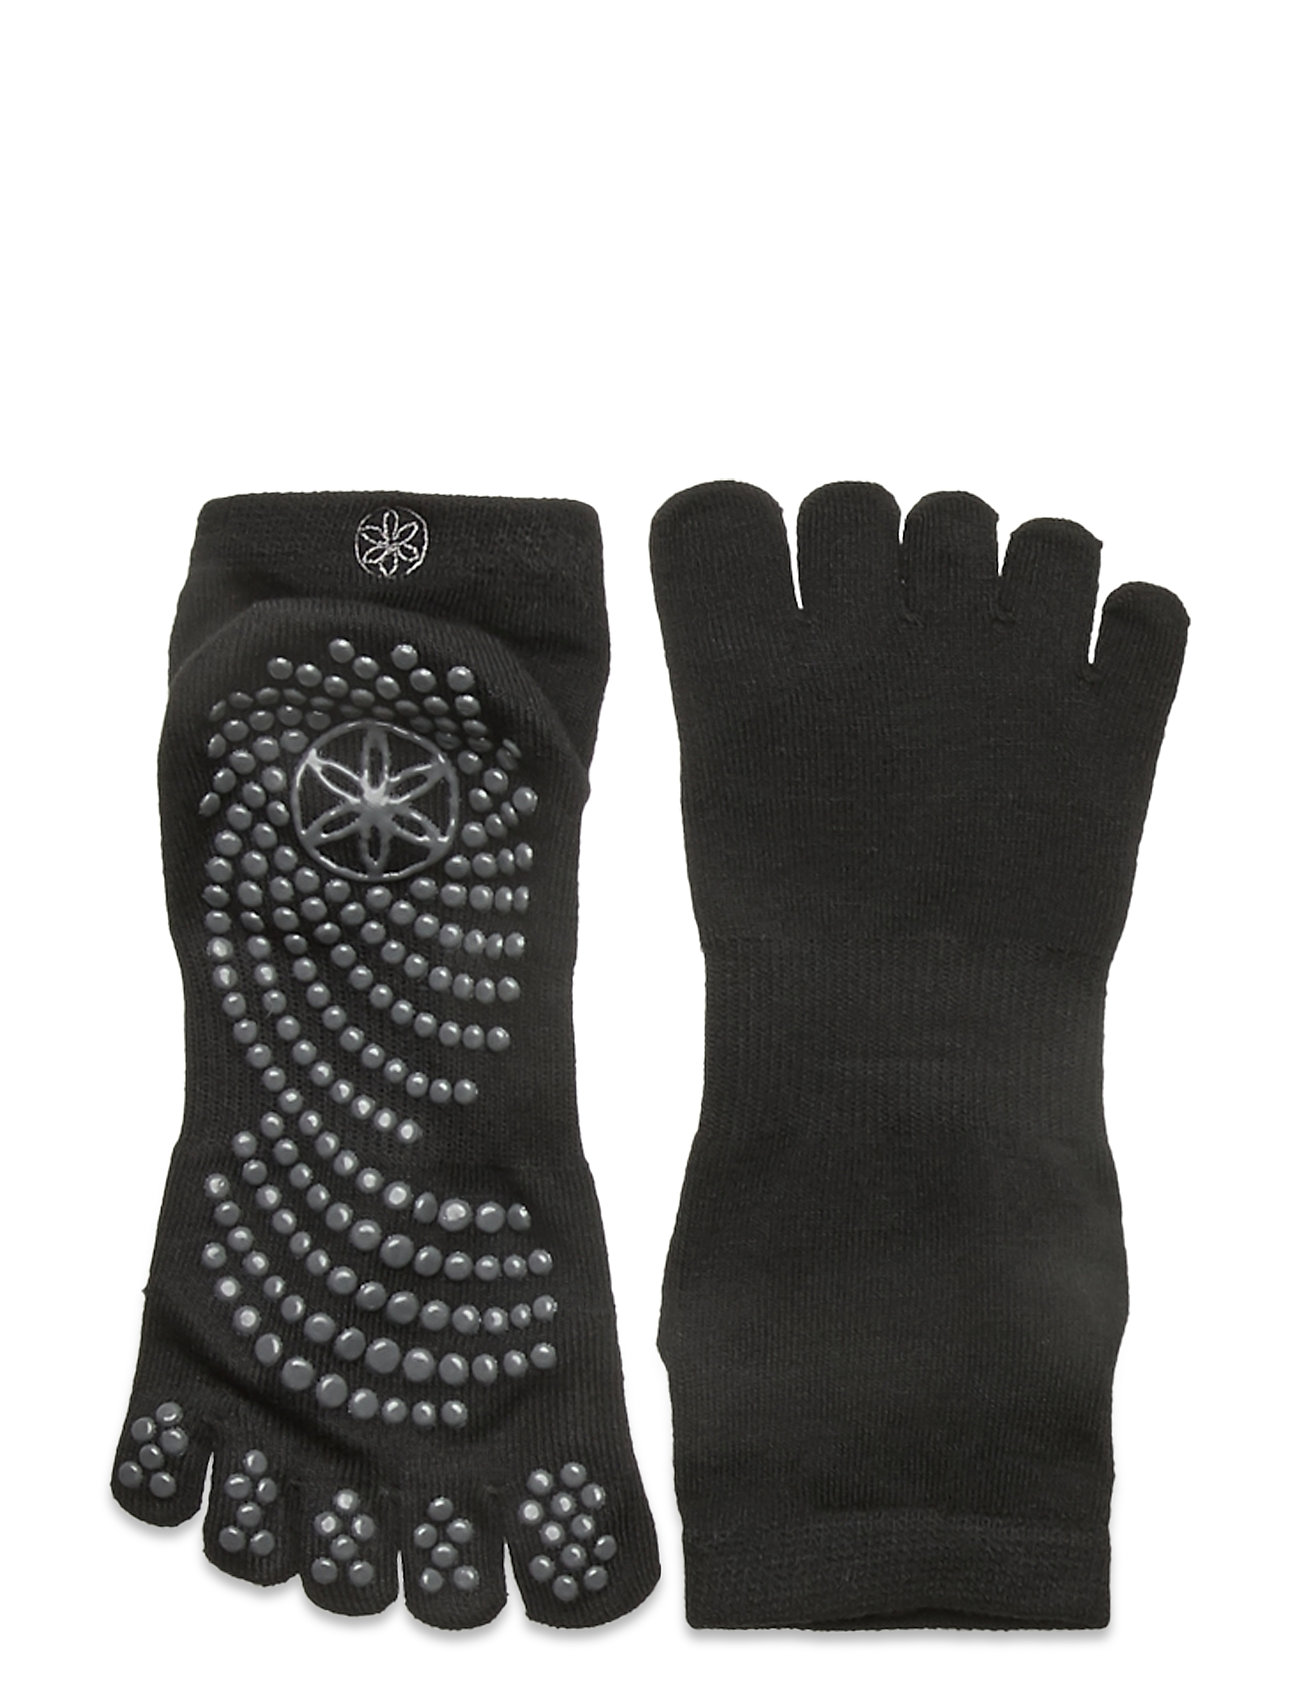 Grippy Yoga Socks M/L Accessories Sports Equipment Yoga Equipment Yoga Socks Musta Gaiam